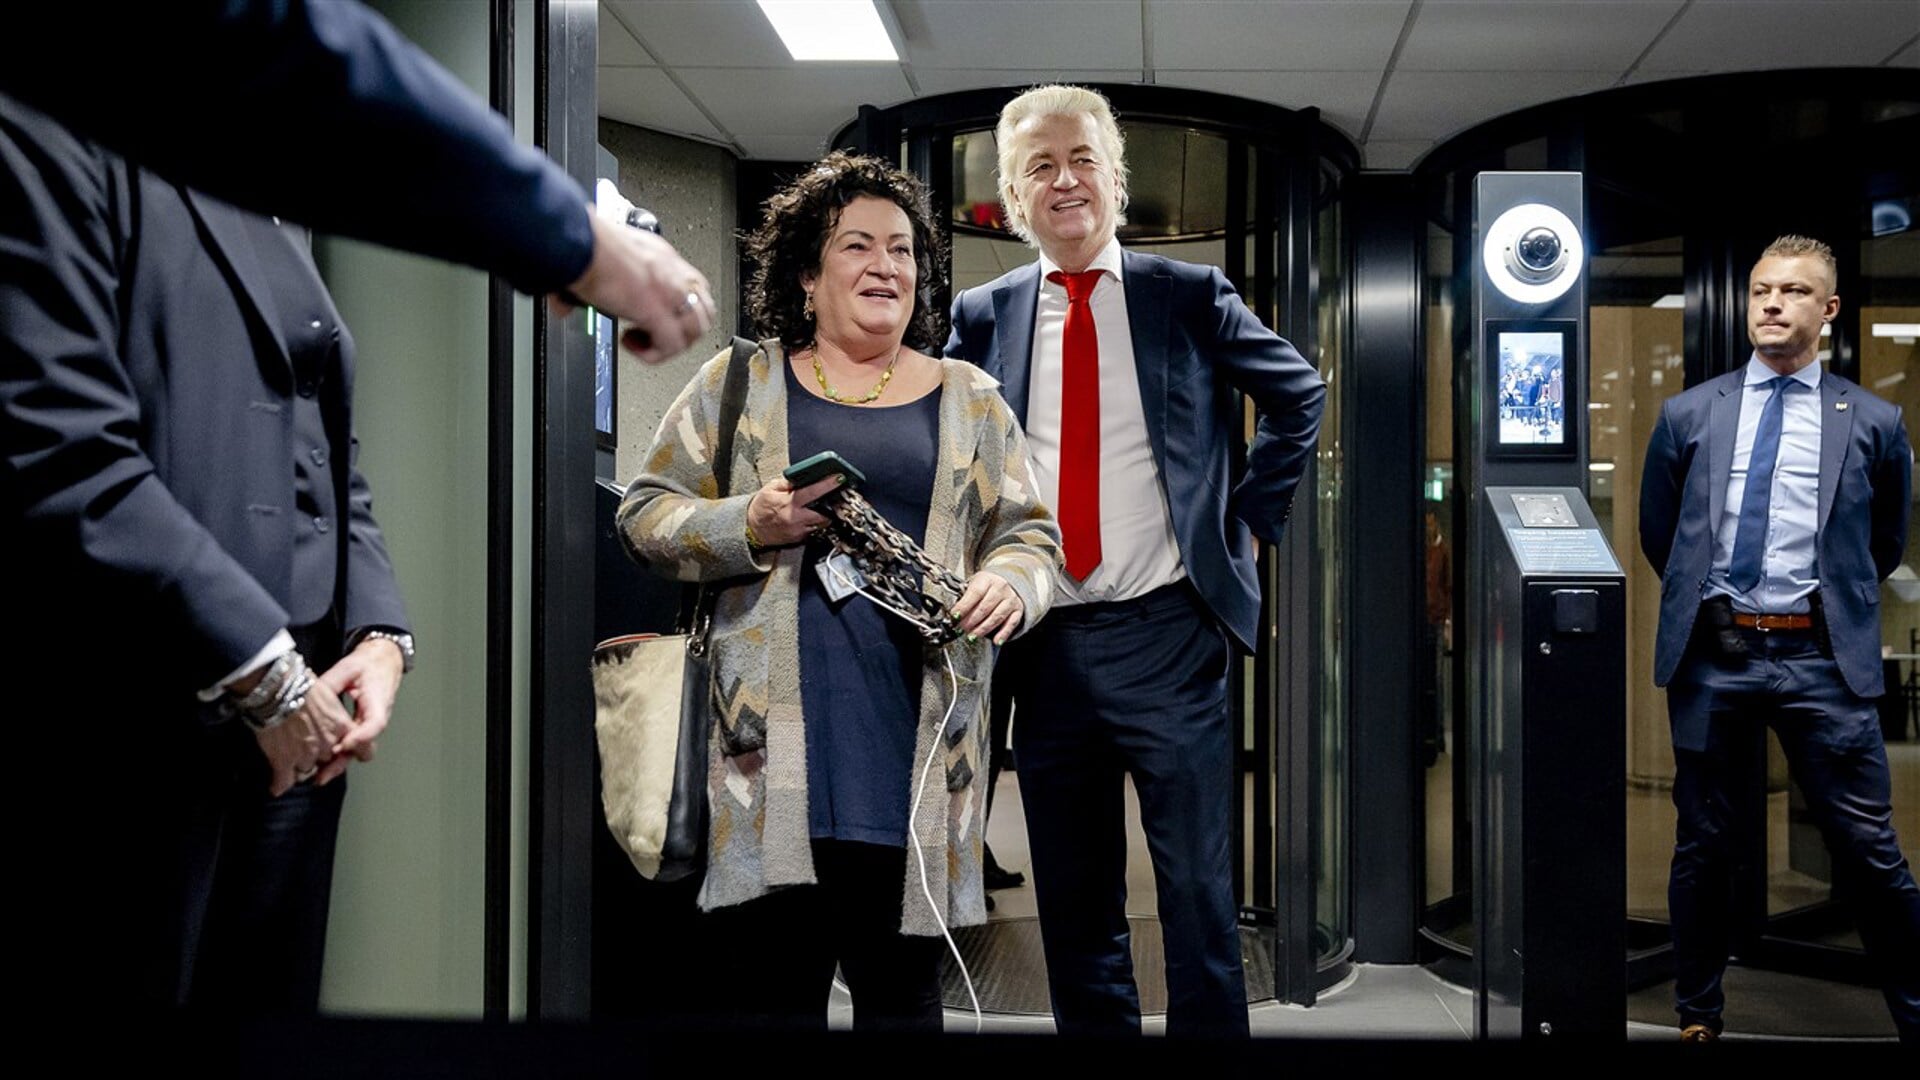 Ook Wilders zei na afloop dat het vertrouwen in elkaar belangrijk is.  